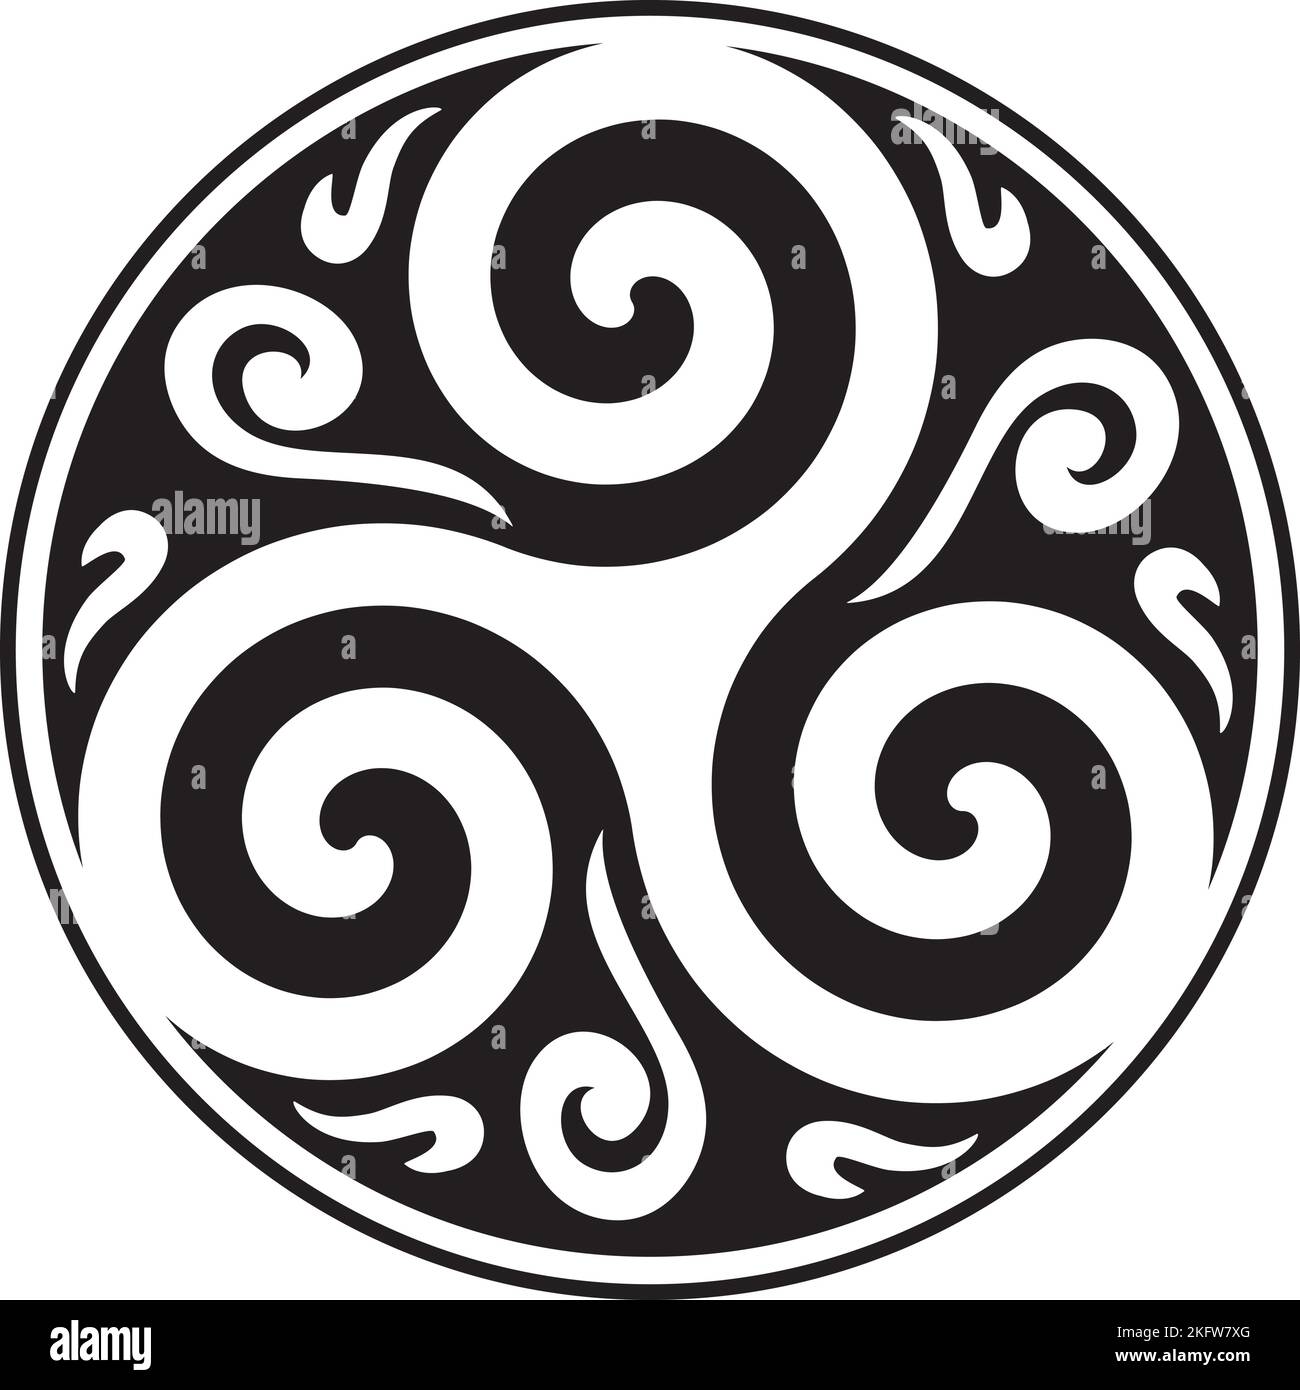 Cercle celtique de Knot et de Triskelion - symbole celtique - Trinité - géométrie sacrée - énergie Illustration de Vecteur